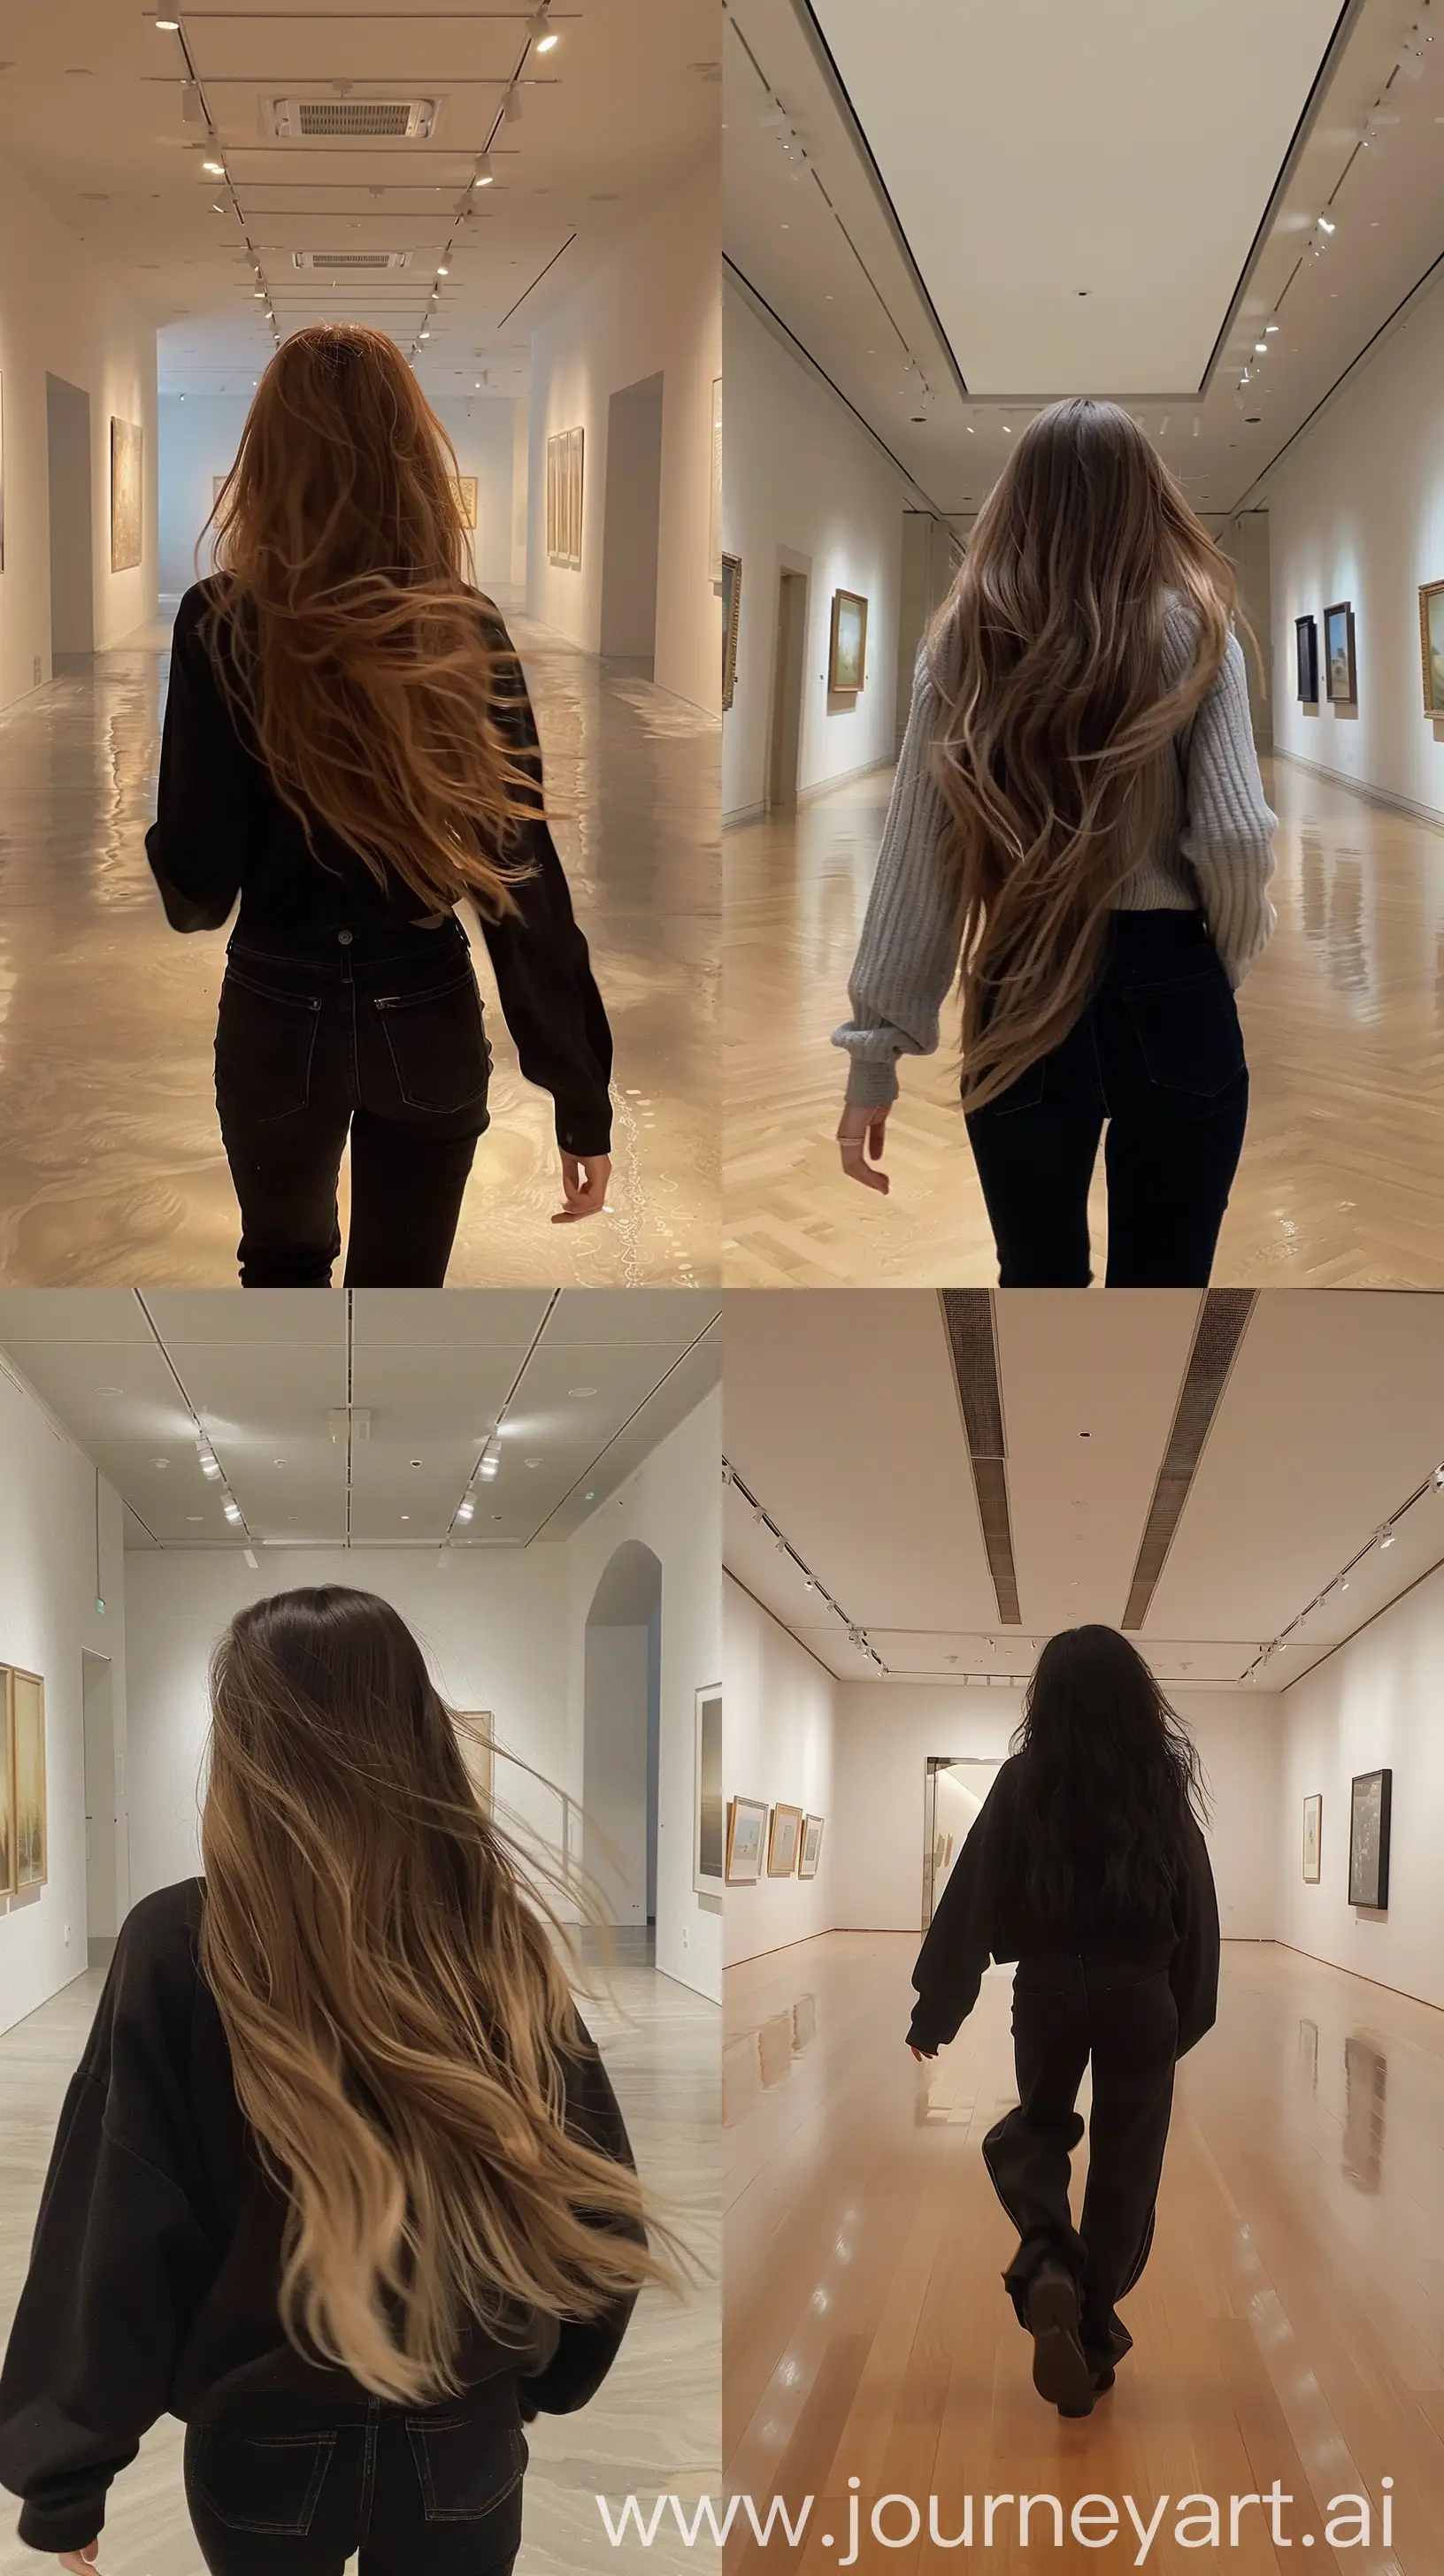 Aesthetic-Selfie-Jennie-from-BLACKPINK-Walking-in-an-Empty-Art-Gallery